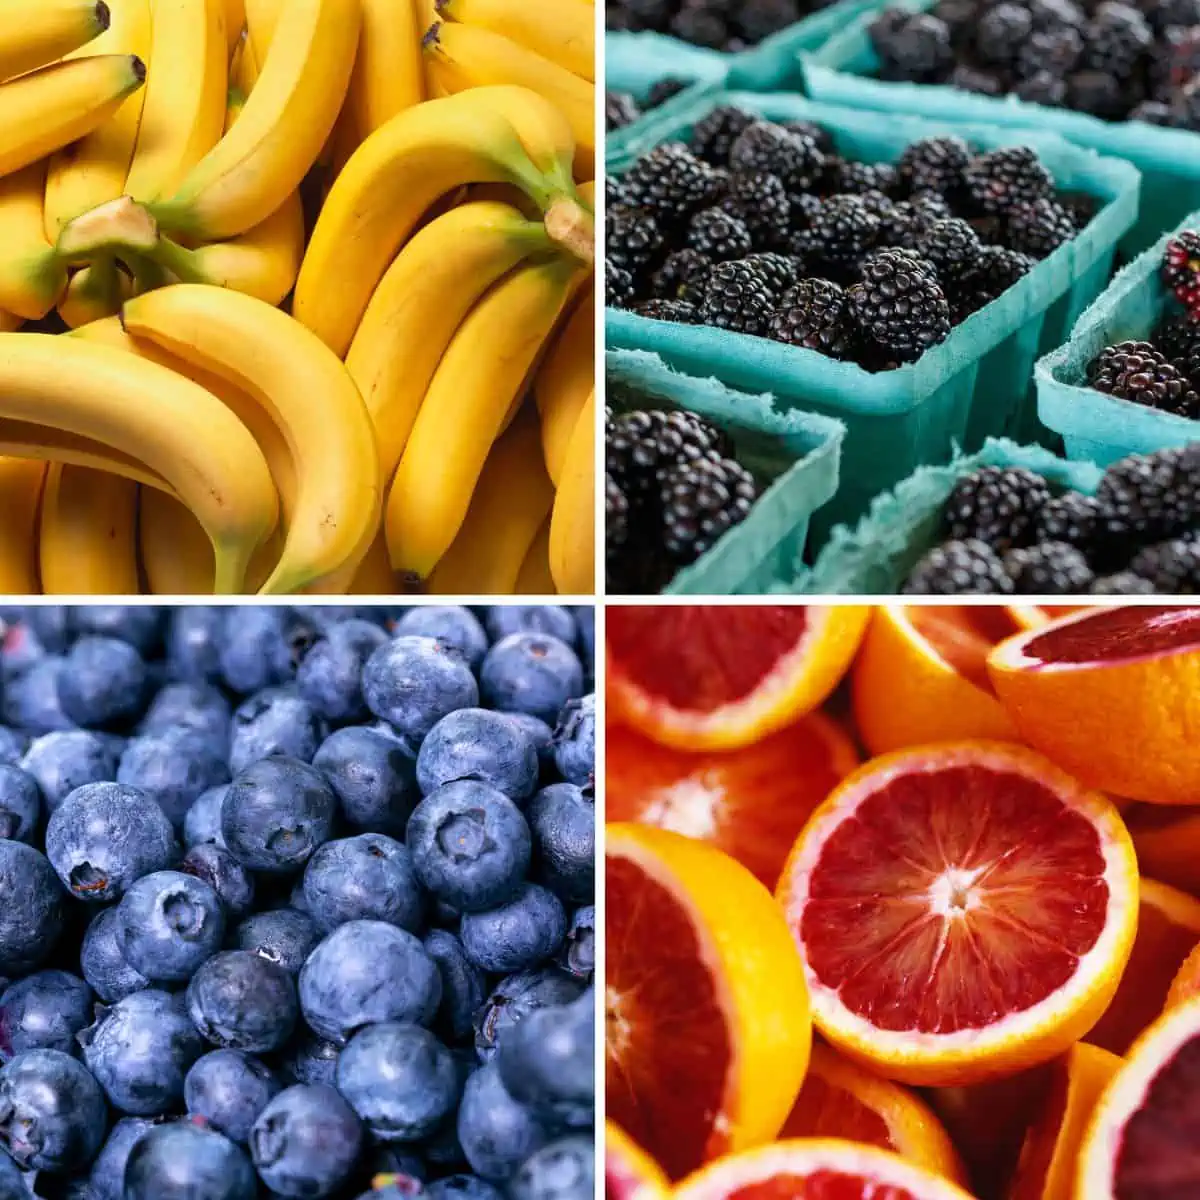 Collage of fruit: bananas, blackberries, blueberries, blood oranges.
